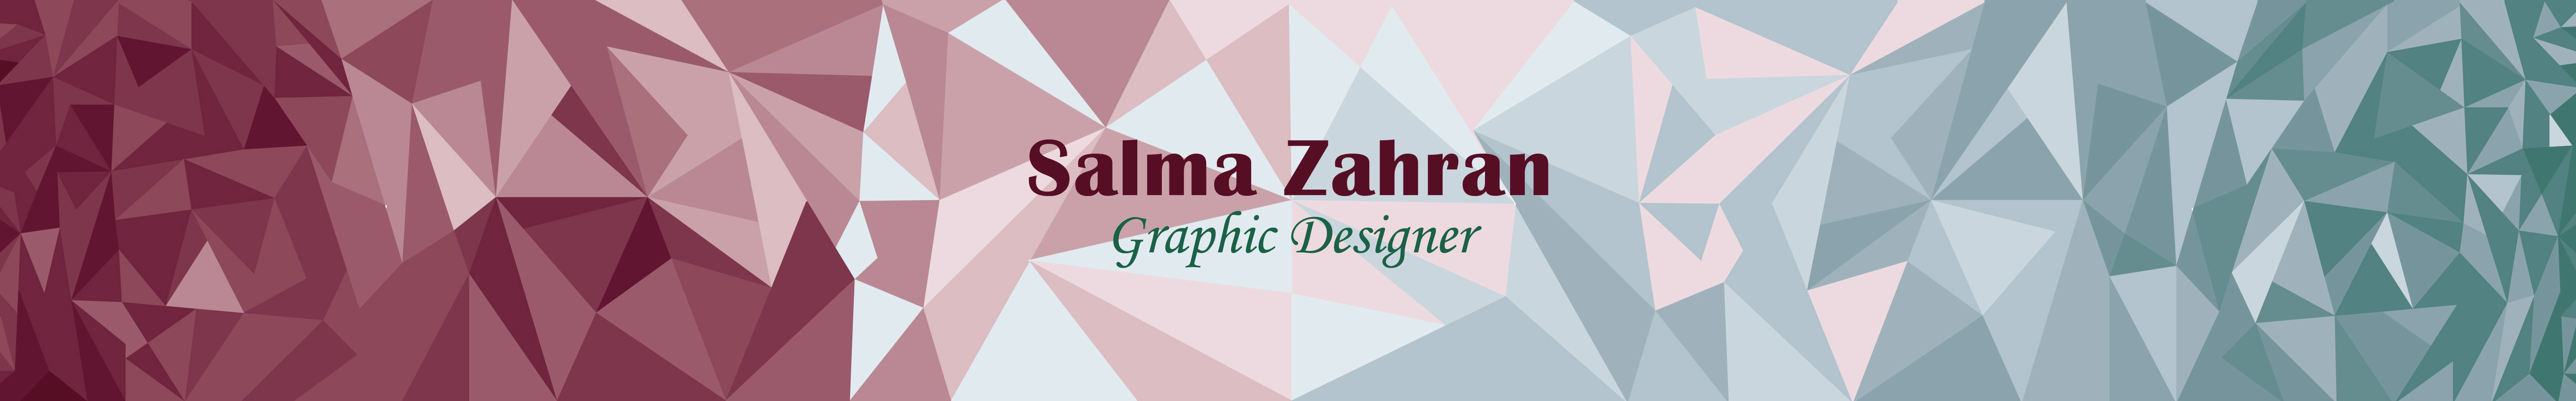 Salma Zahran 的個人檔案橫幅